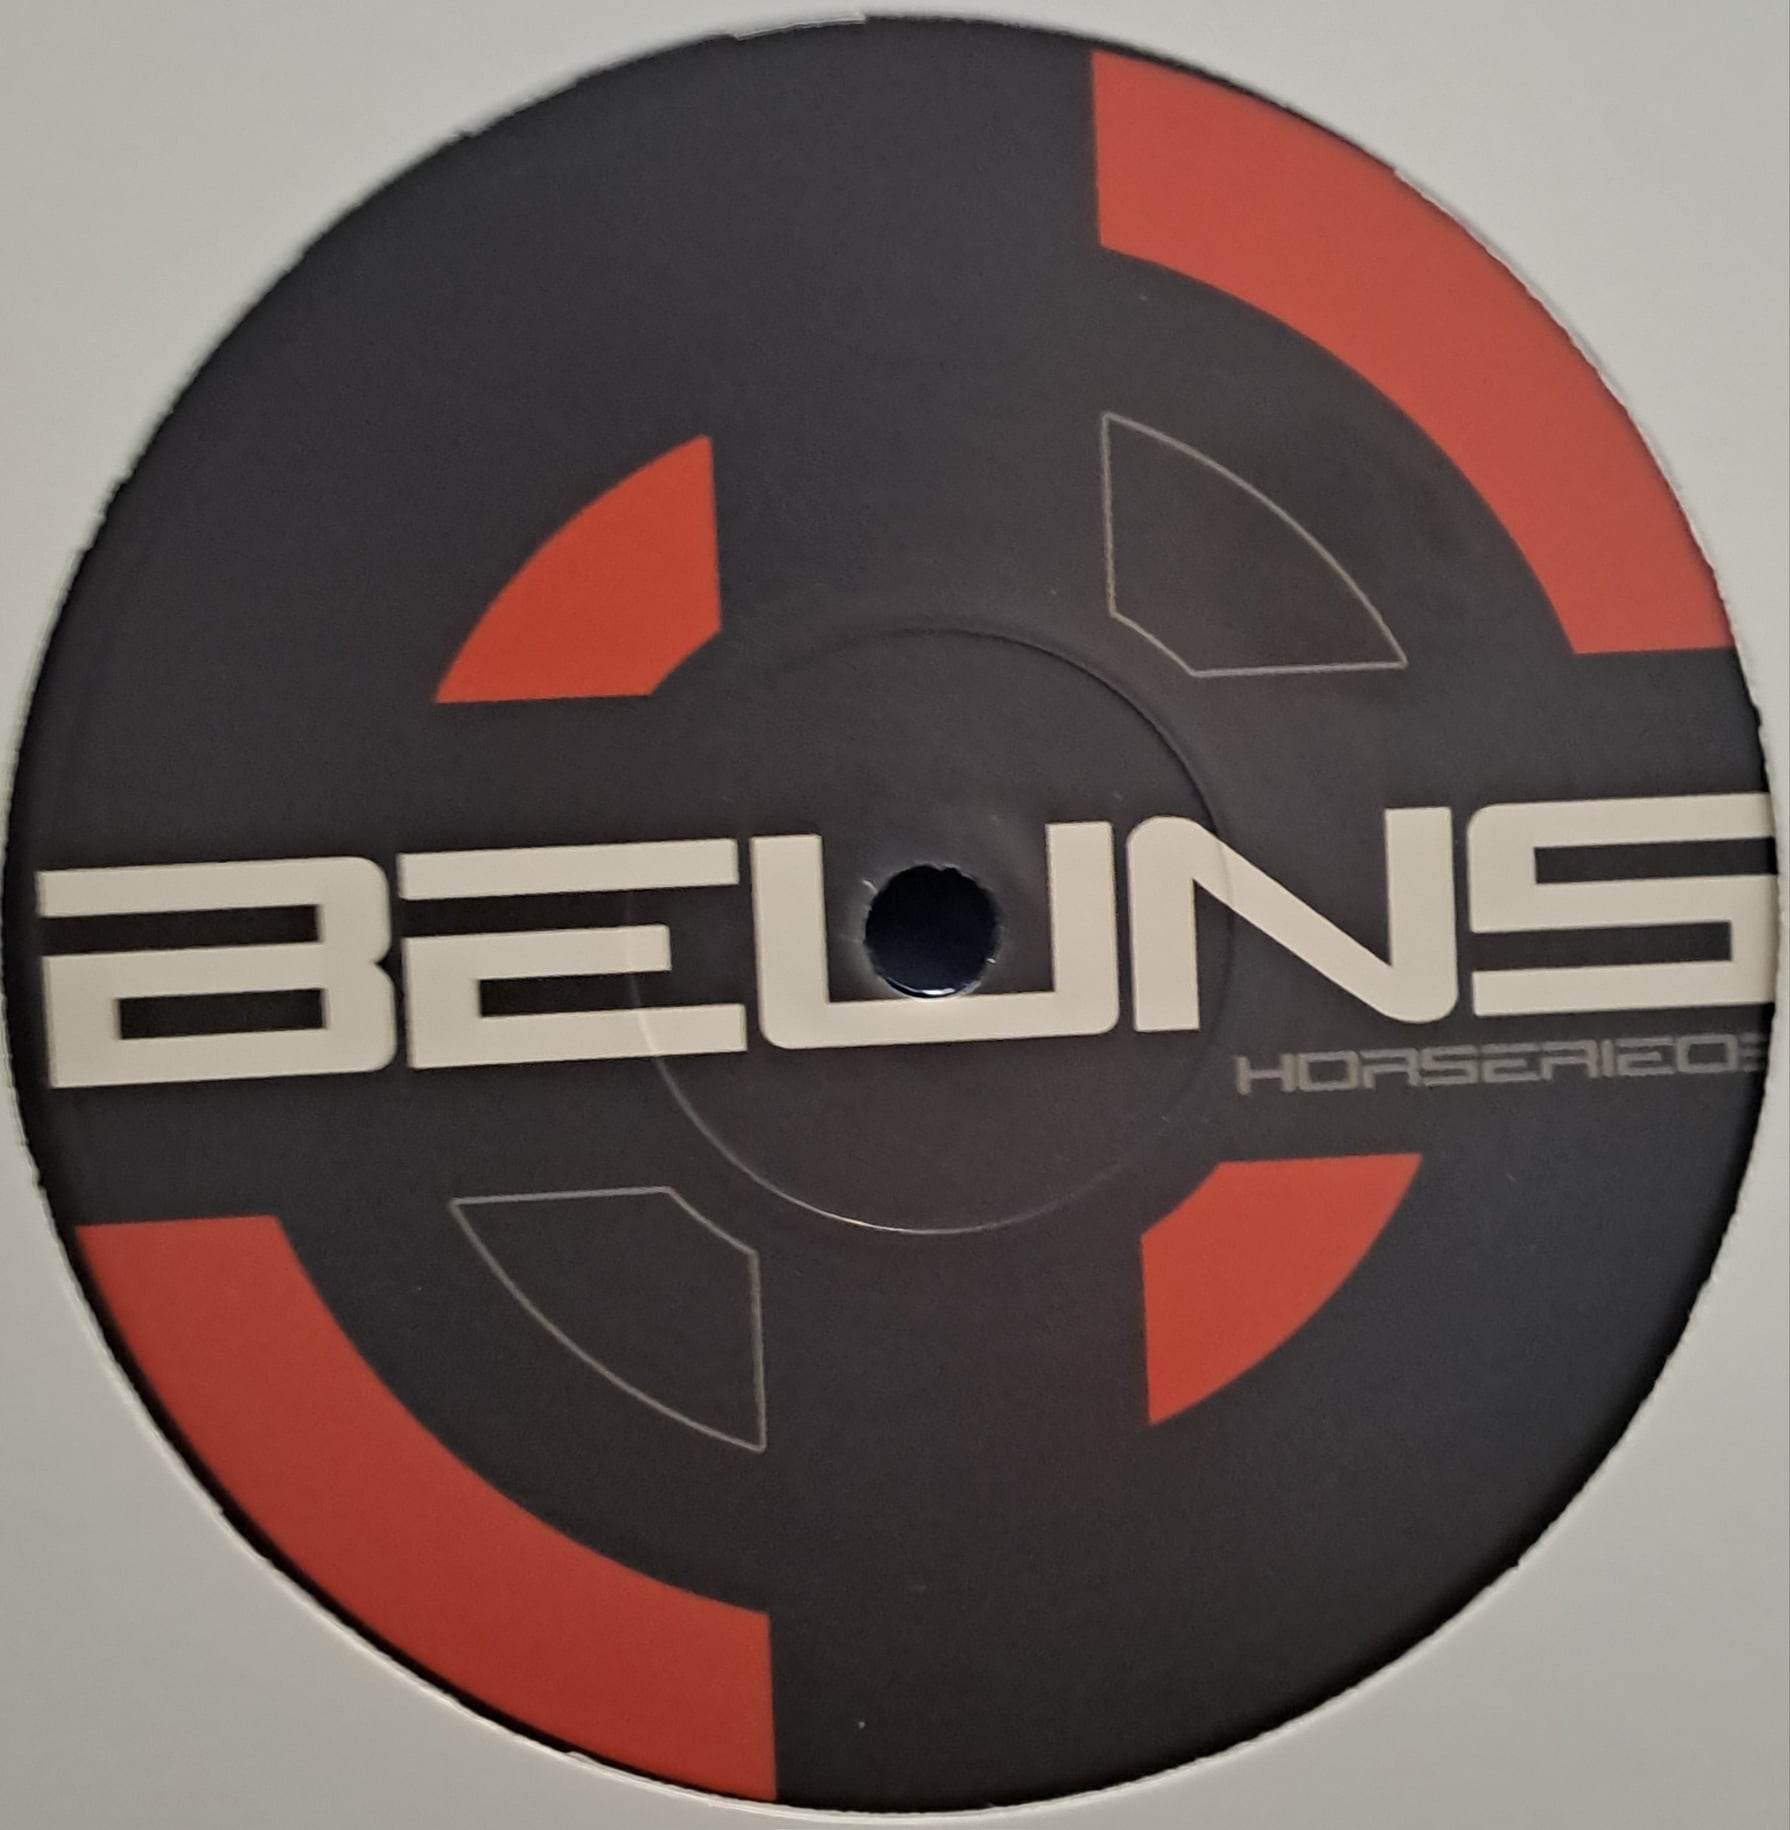 Beuns Horserie 03 RP (toute dernière copie en stock) - vinyle freetekno